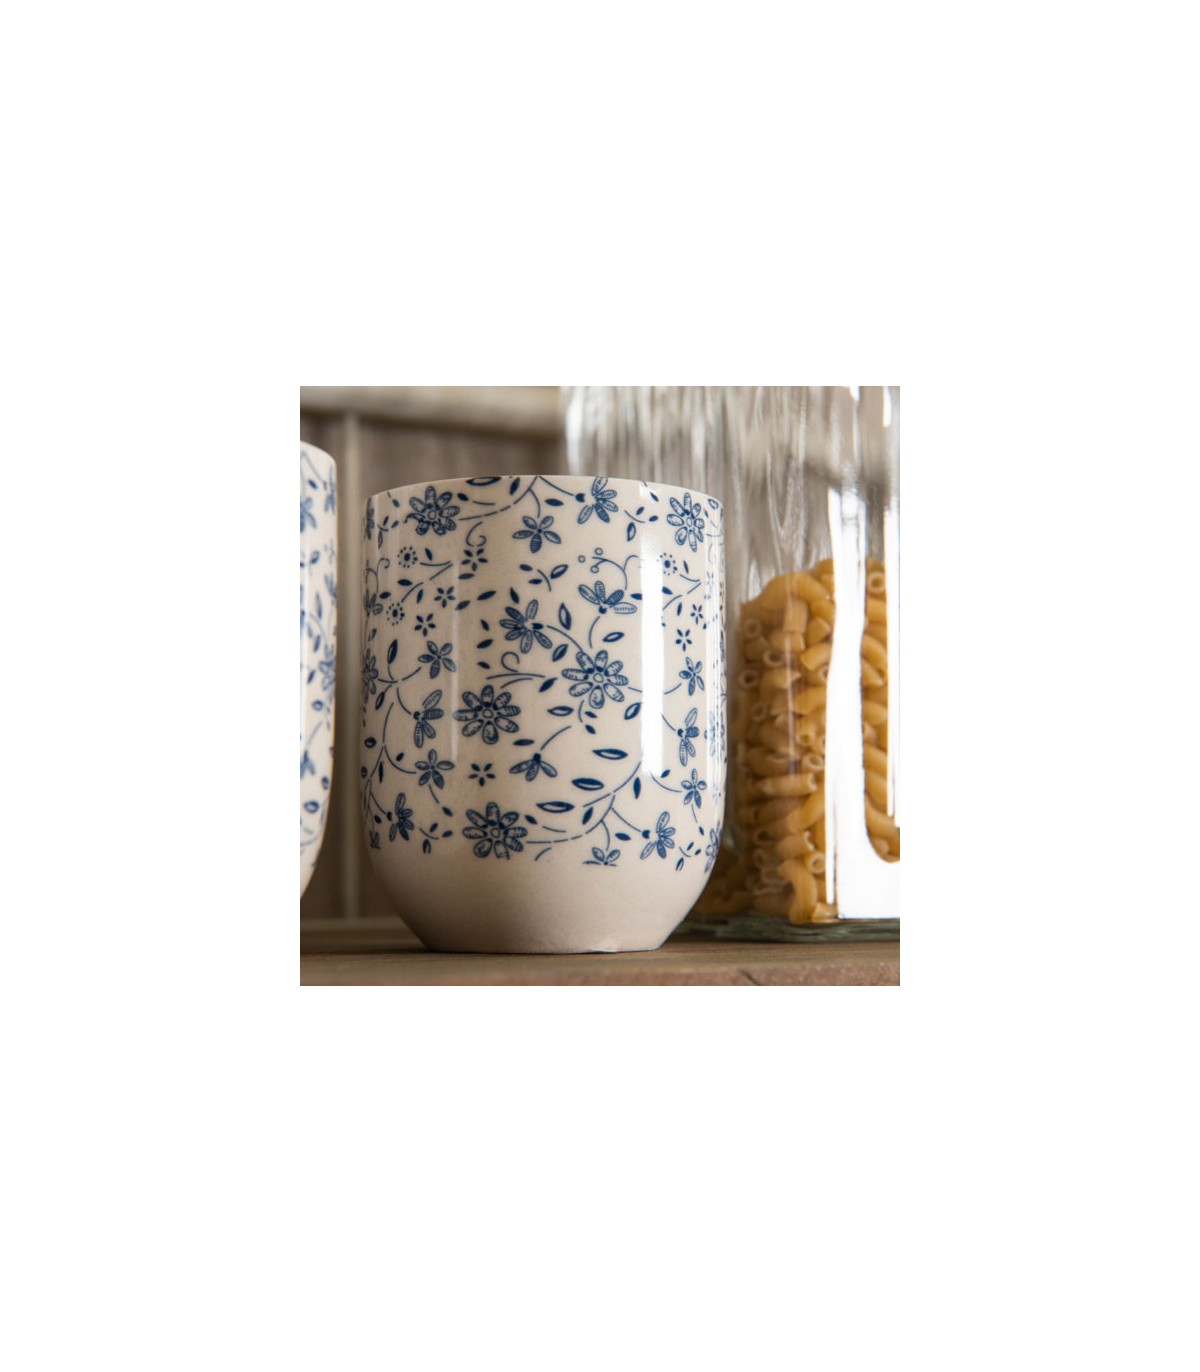 Gobelet Porcelaine Fleuris Bleus, le lot de 2|Objets Tendance